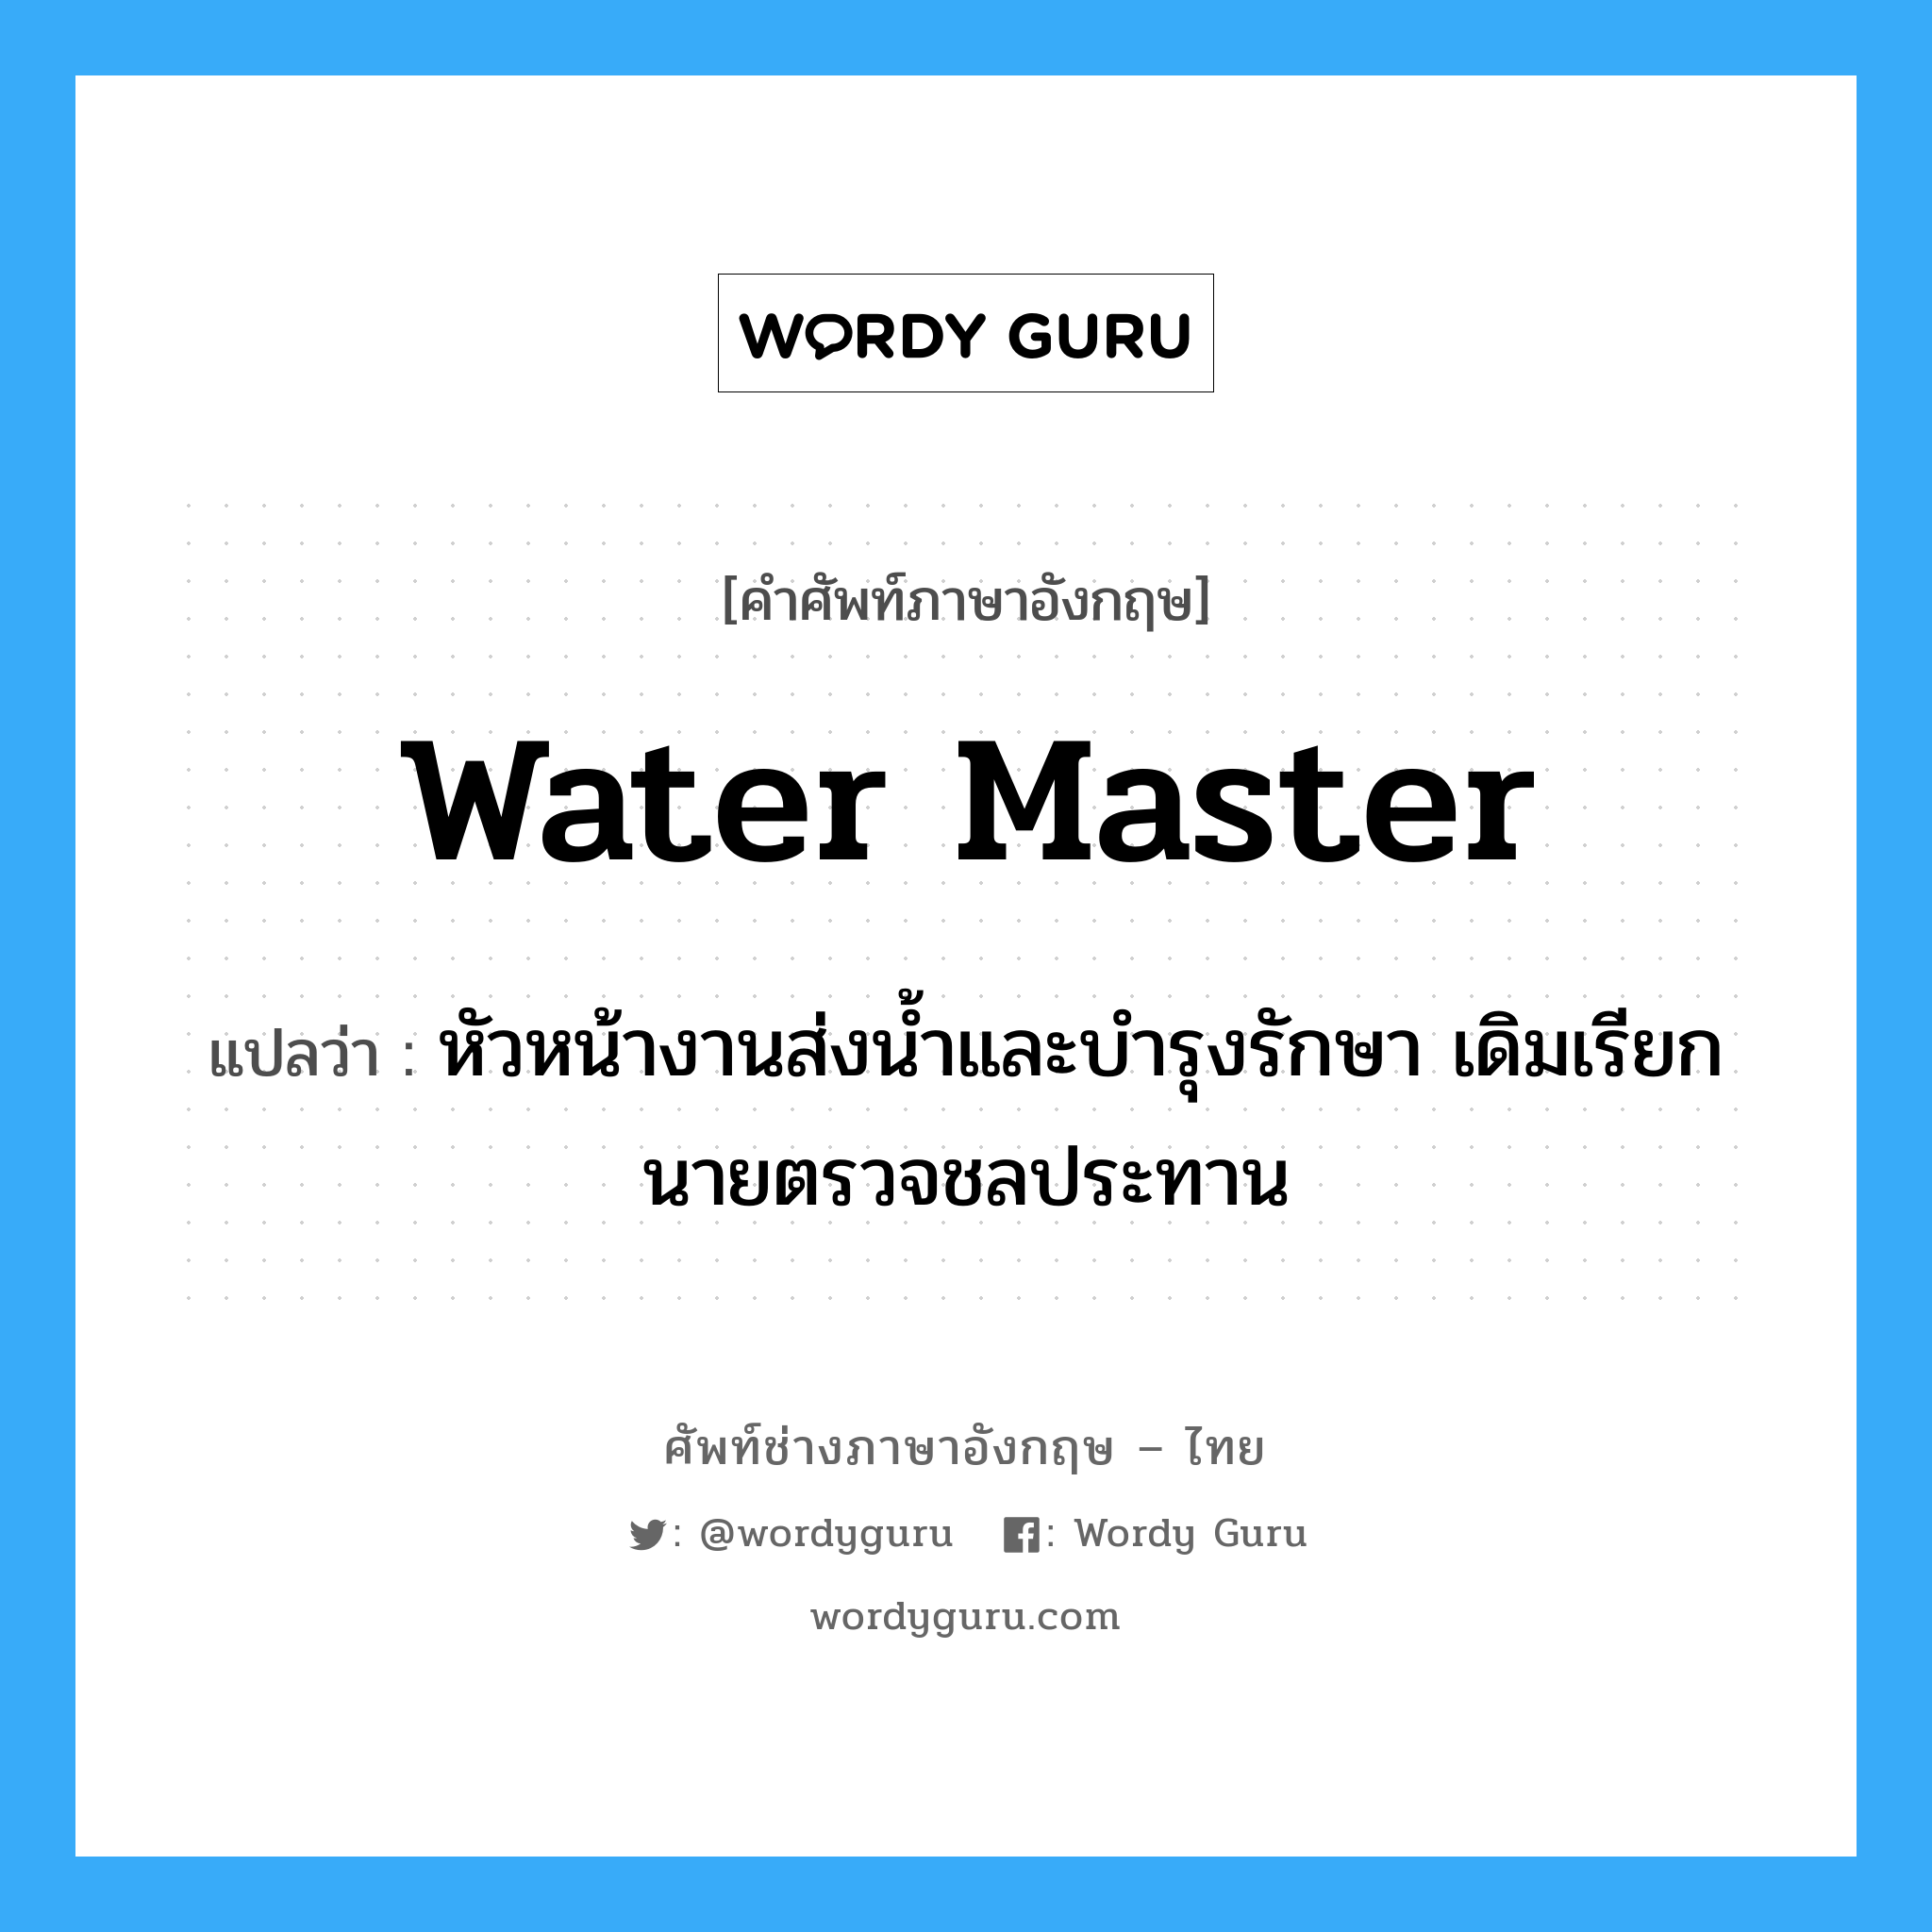 water master แปลว่า?, คำศัพท์ช่างภาษาอังกฤษ - ไทย water master คำศัพท์ภาษาอังกฤษ water master แปลว่า หัวหน้างานส่งน้ำและบำรุงรักษา เดิมเรียกนายตรวจชลประทาน